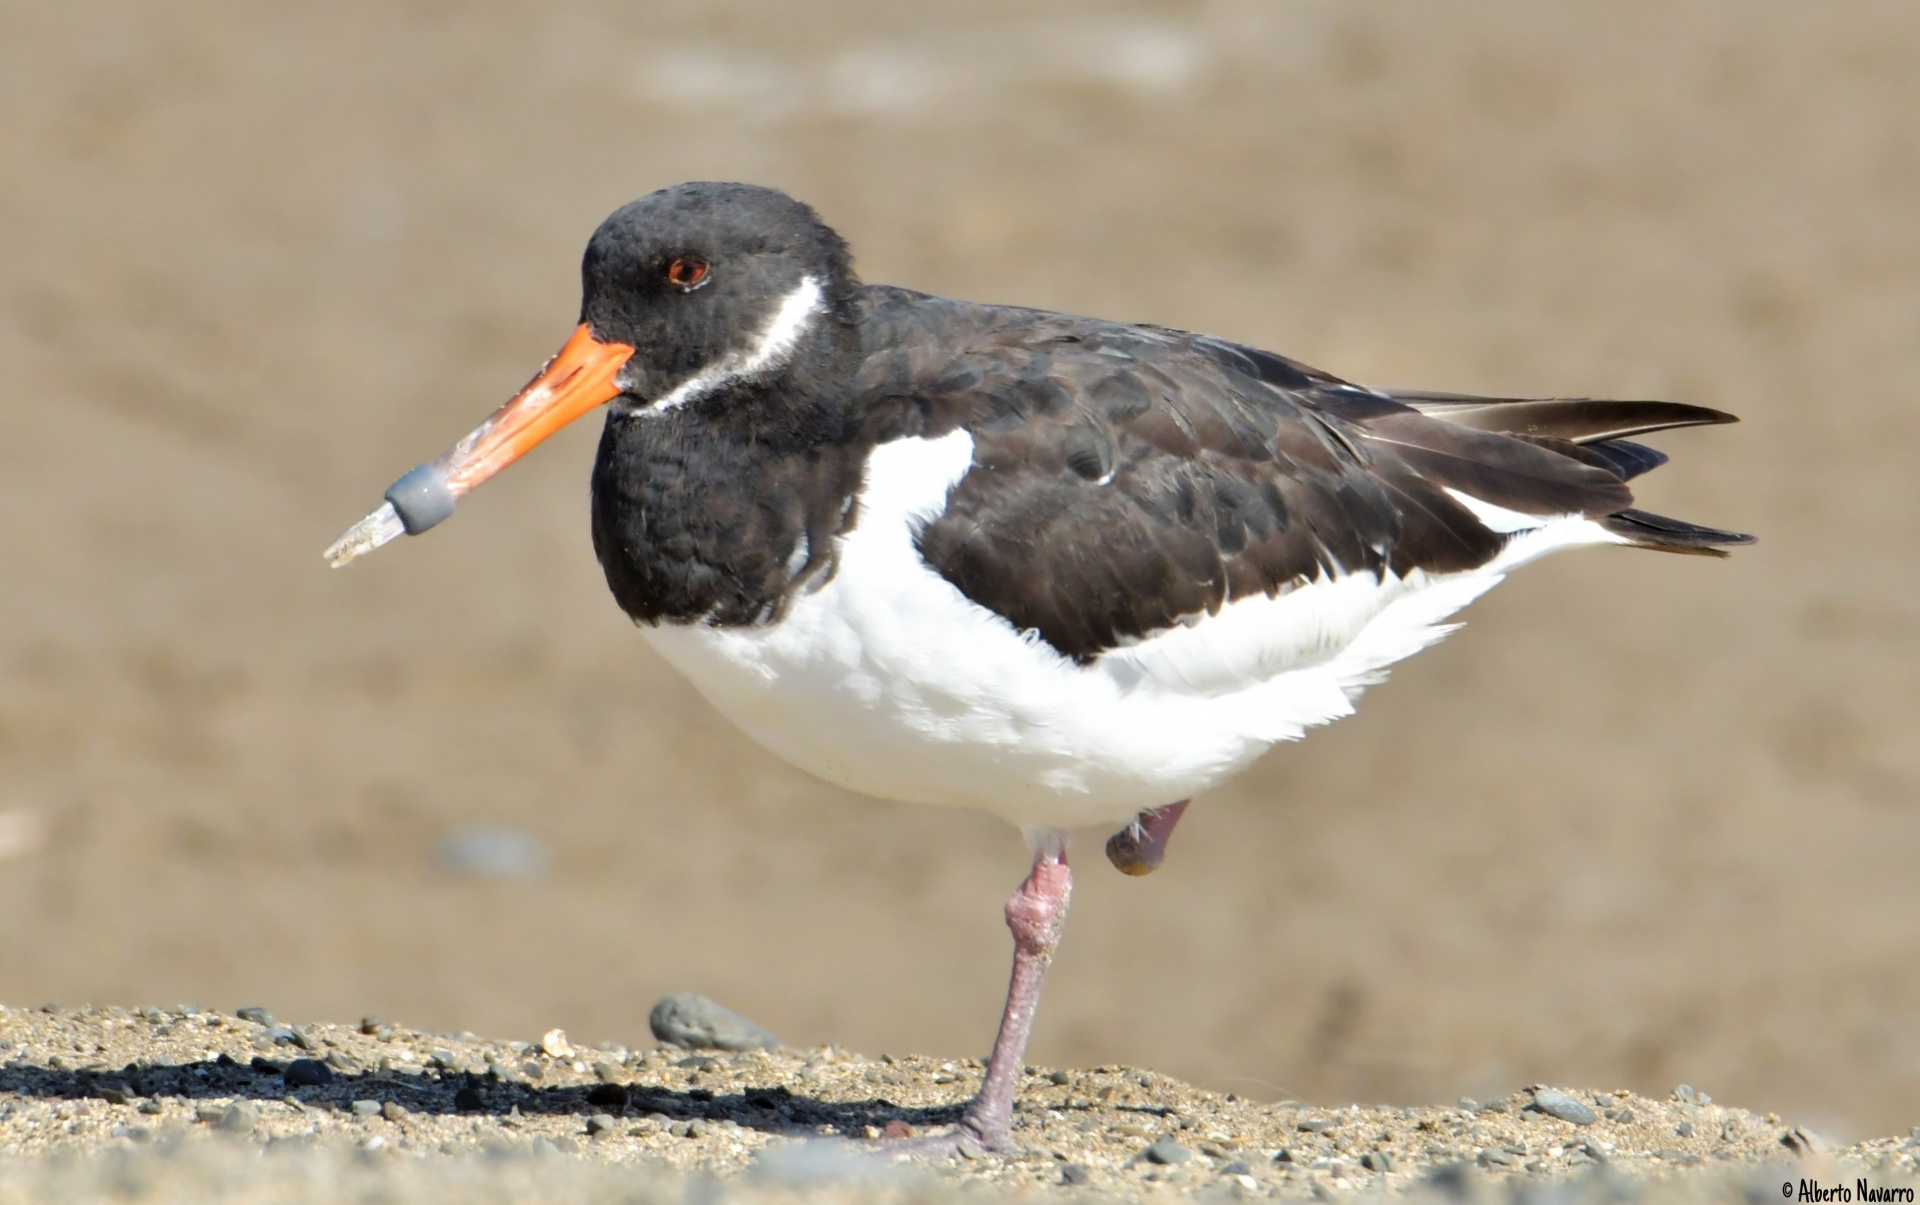 Investigadores de la ULPGC detectan una alta presencia de microplásticos y contaminantes químicos en las aves marinas de Gran Canaria